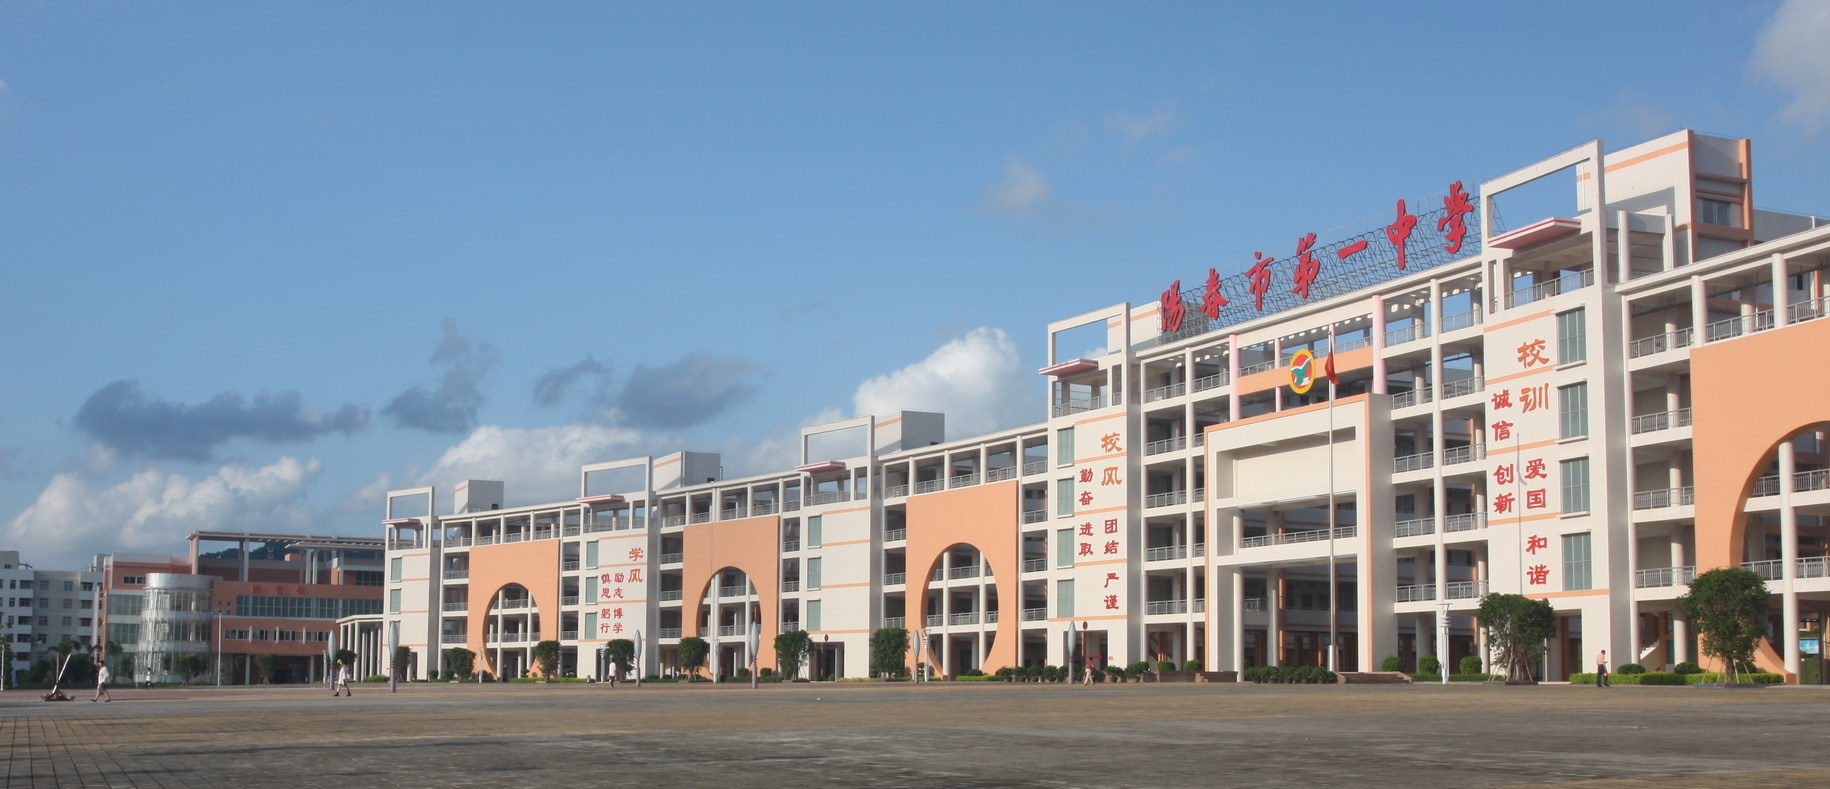 广东省阳春市第一中学创办于1919年